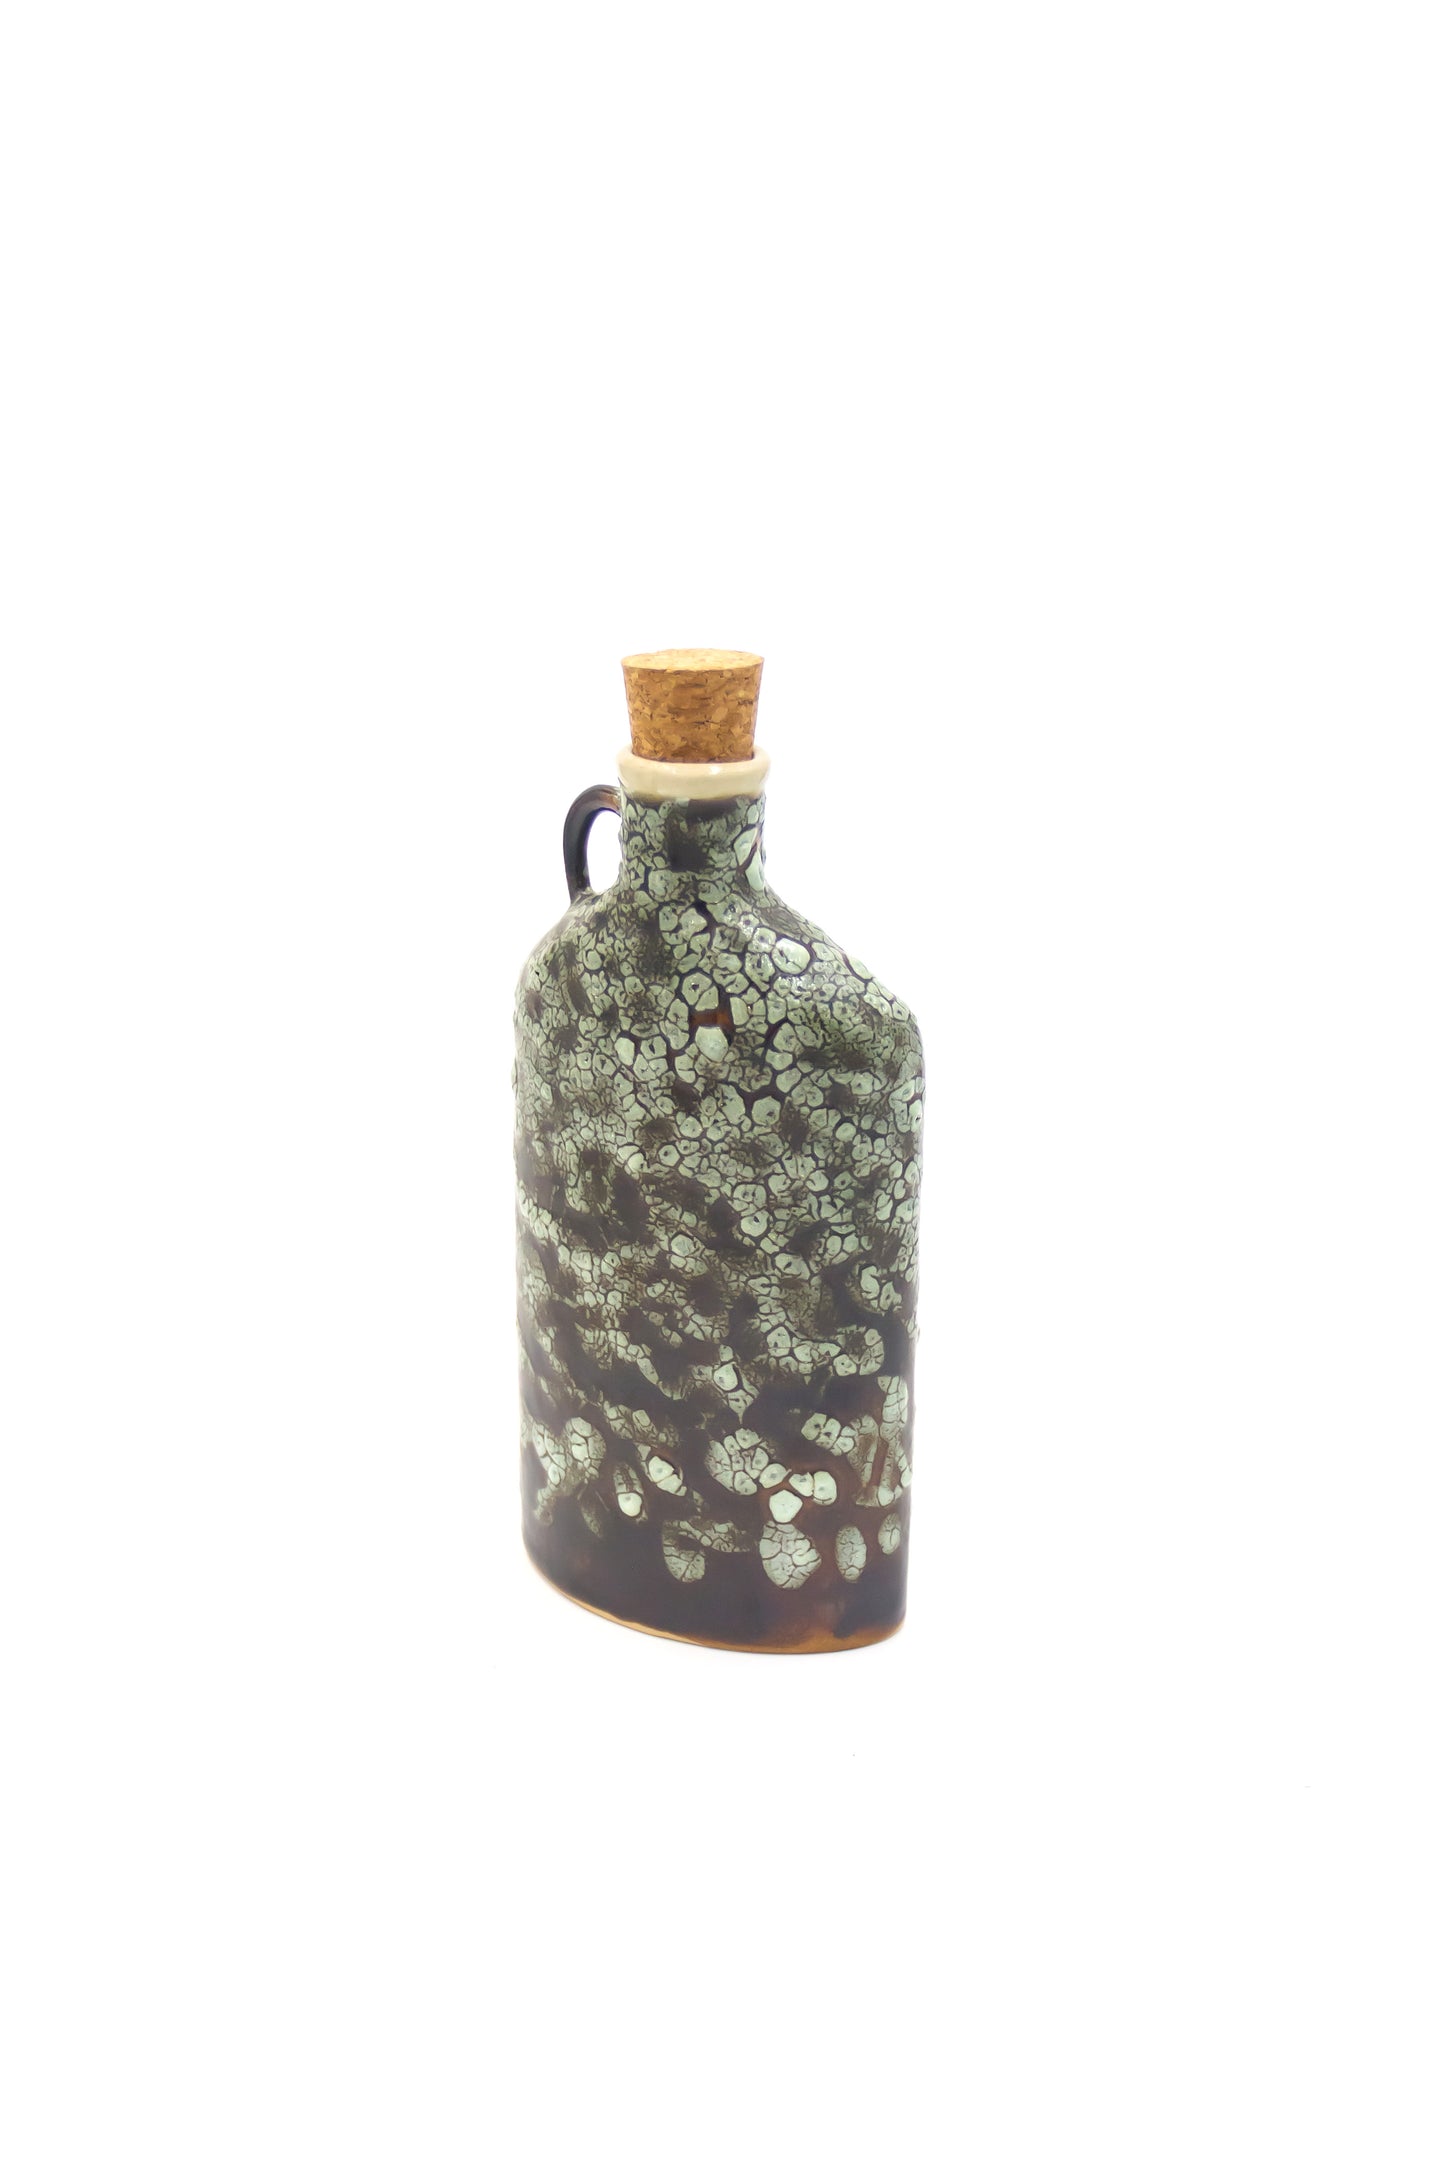 Butelka ceramiczna w kolorze zielono-brązowym